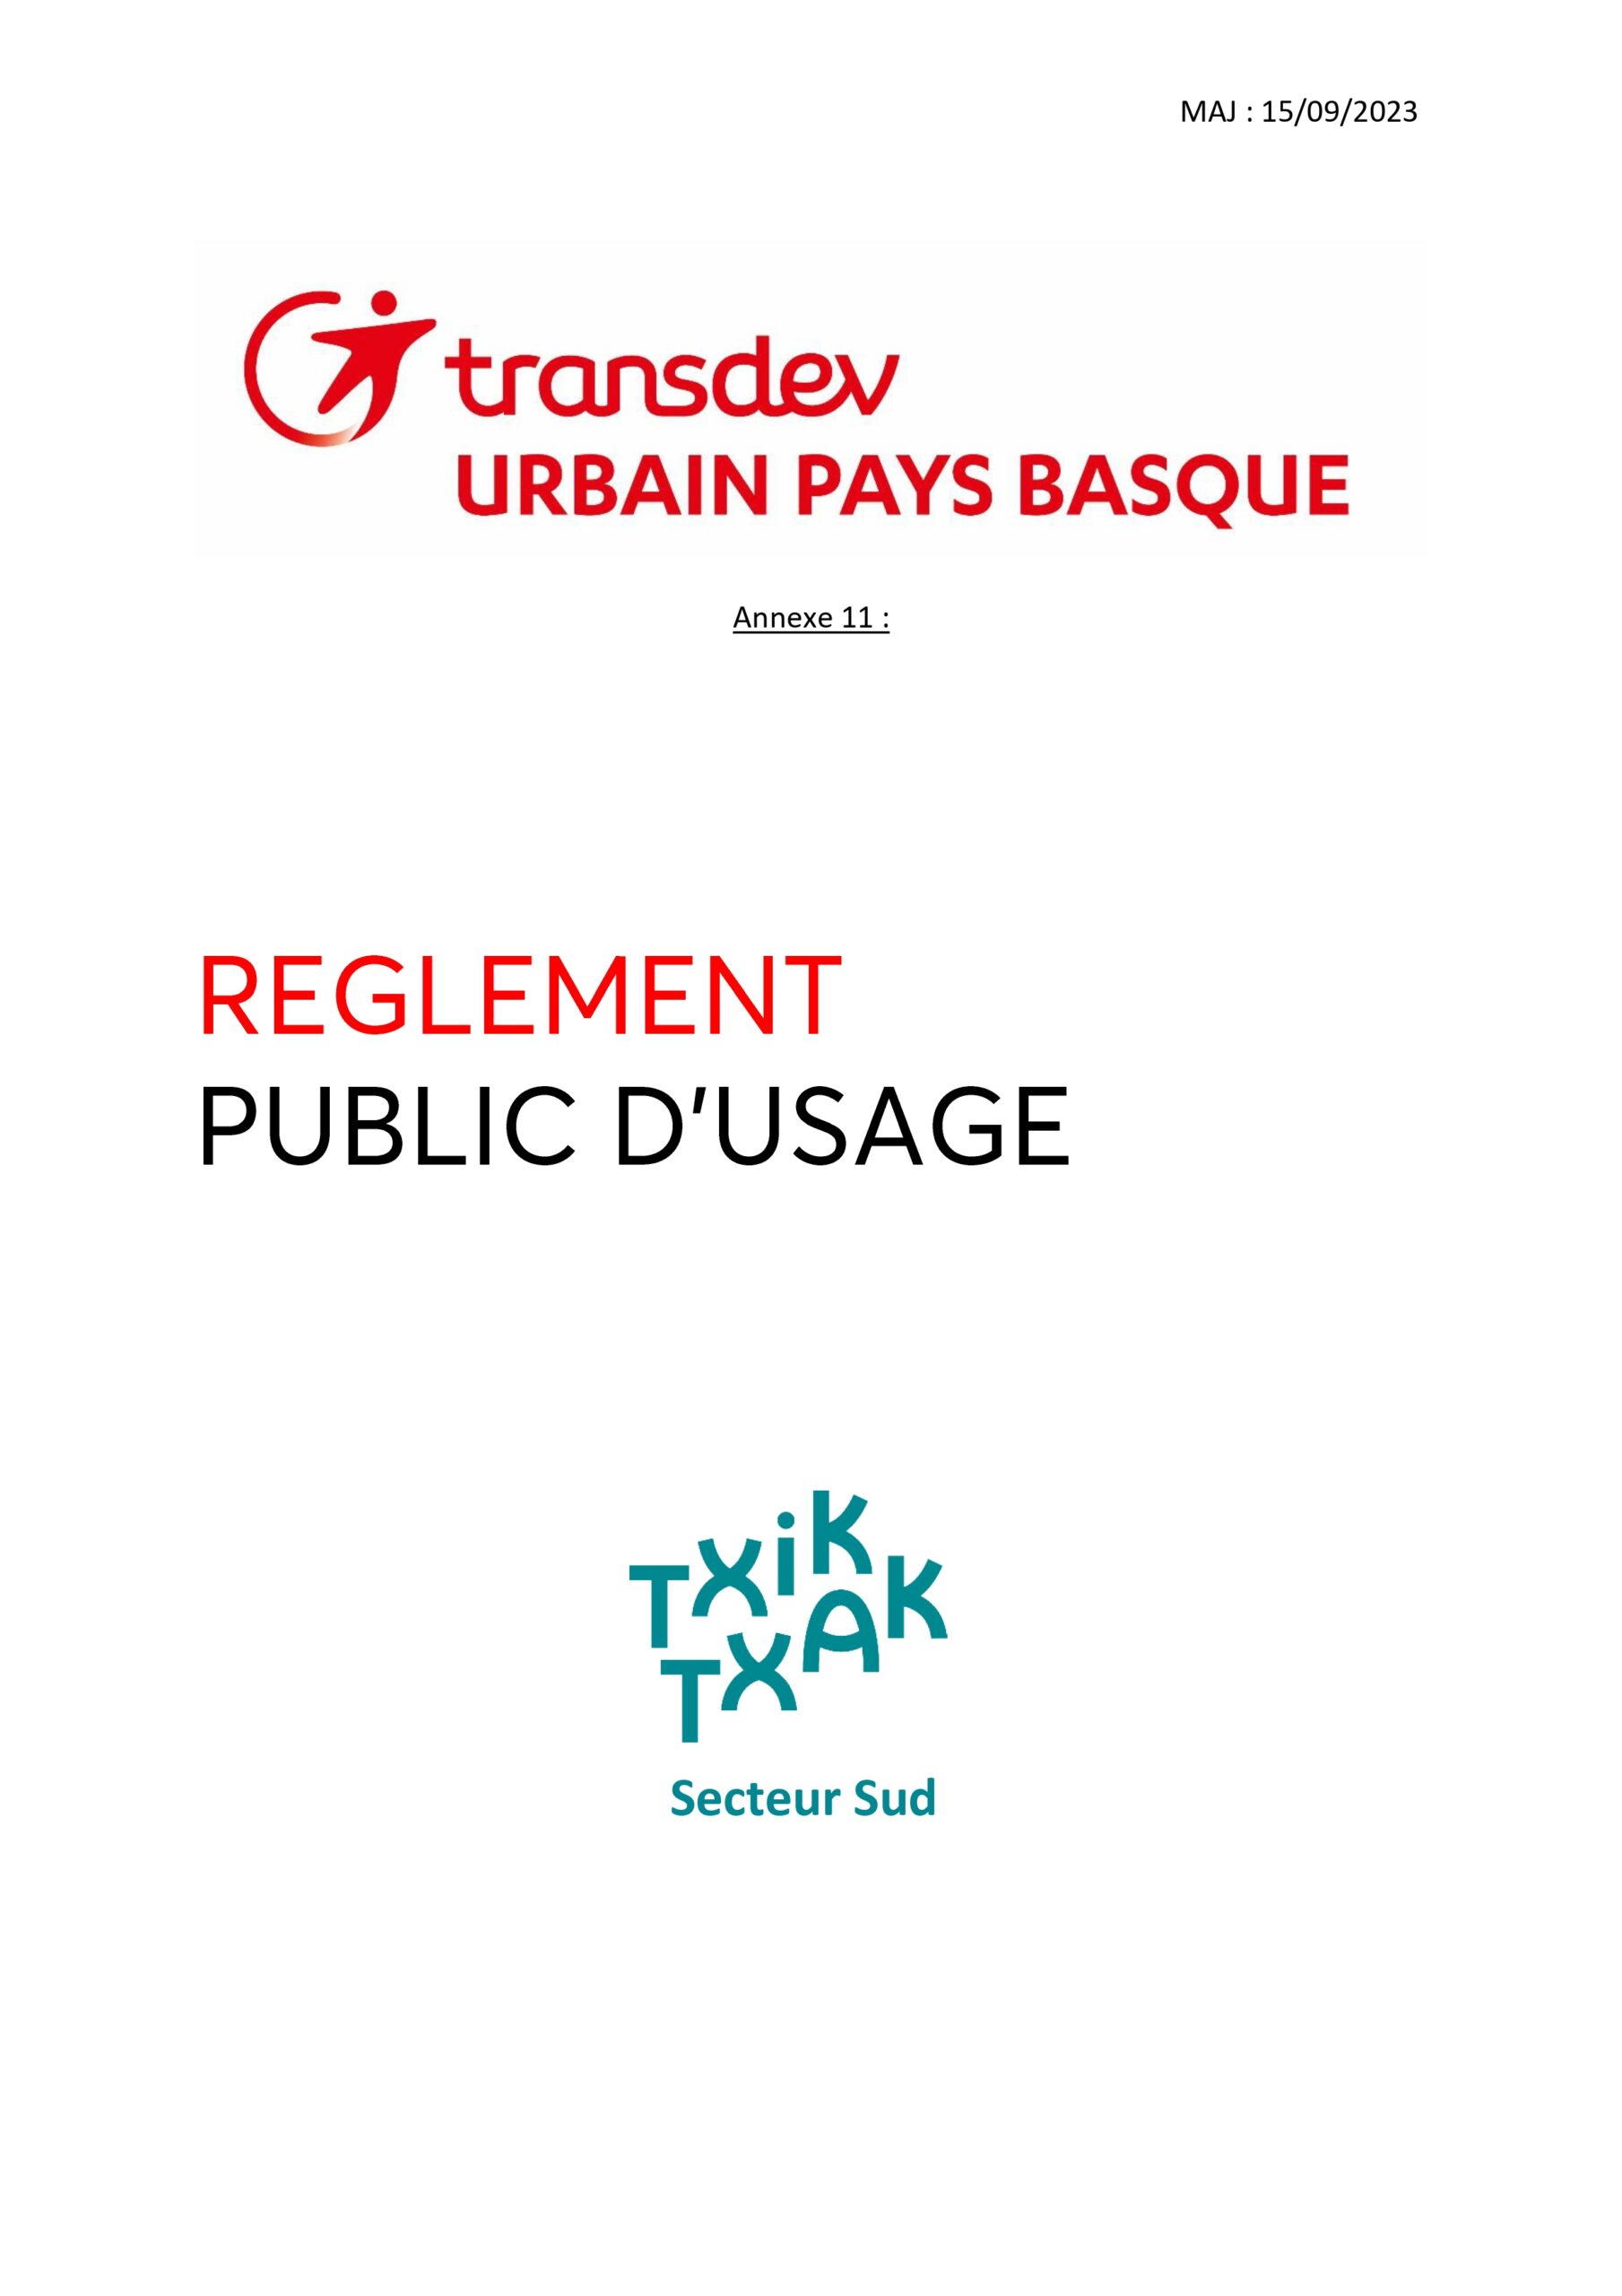 Trandev urbain pays basque annexe 11 Reglement public d'usage Txik txak Secteur sud